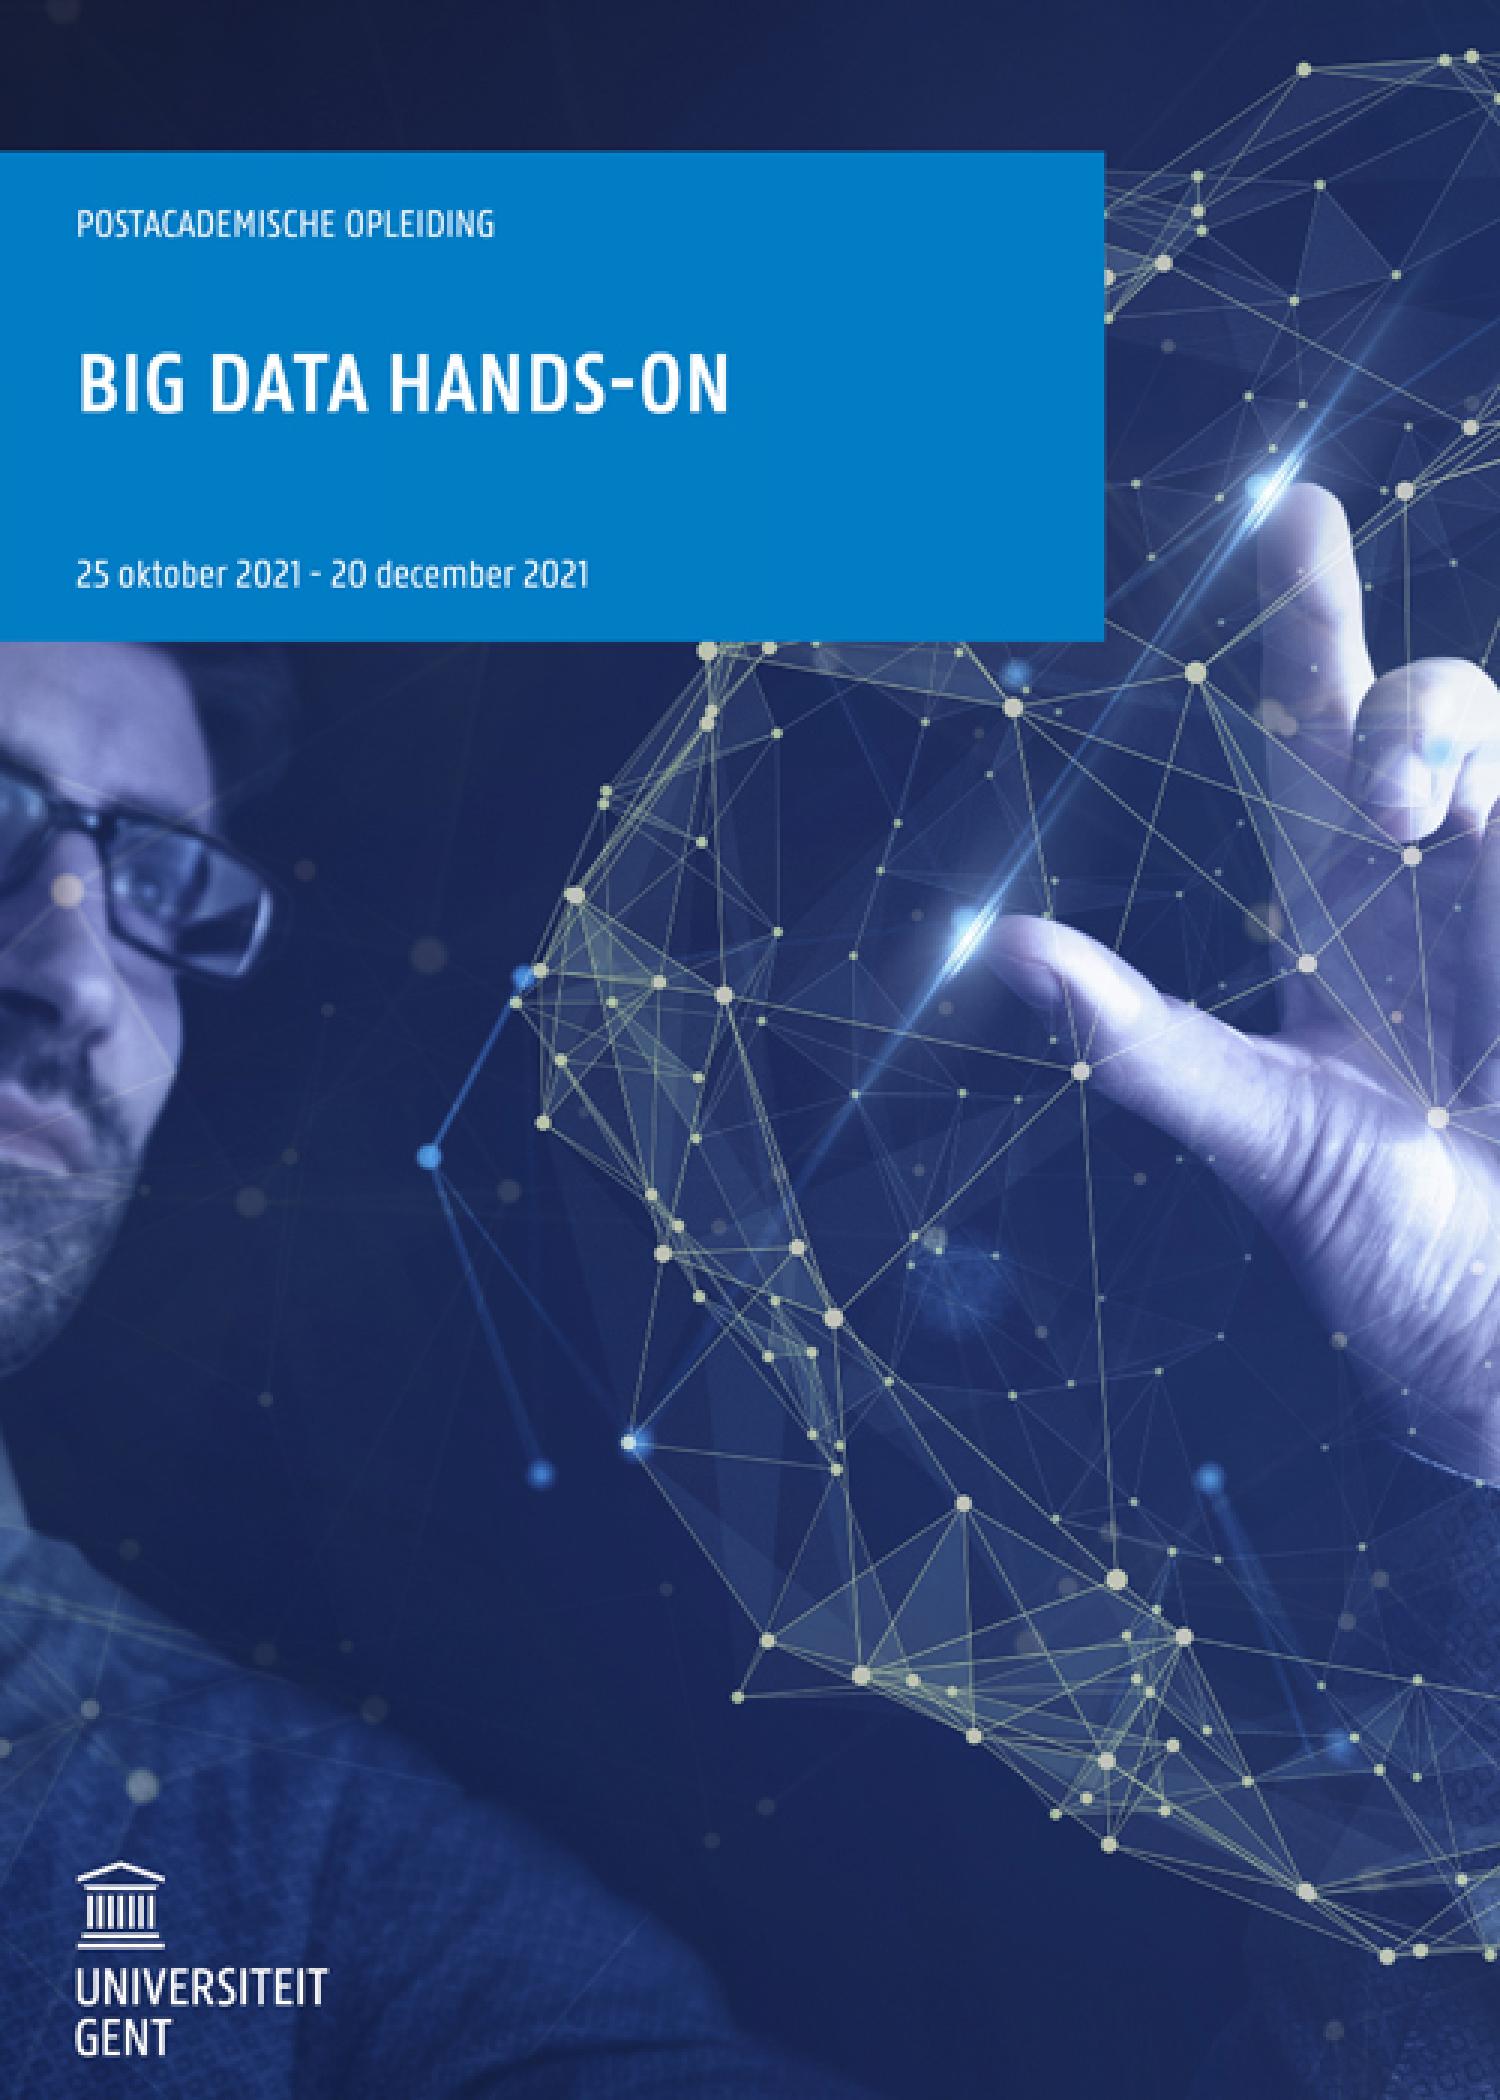 Big Data handson